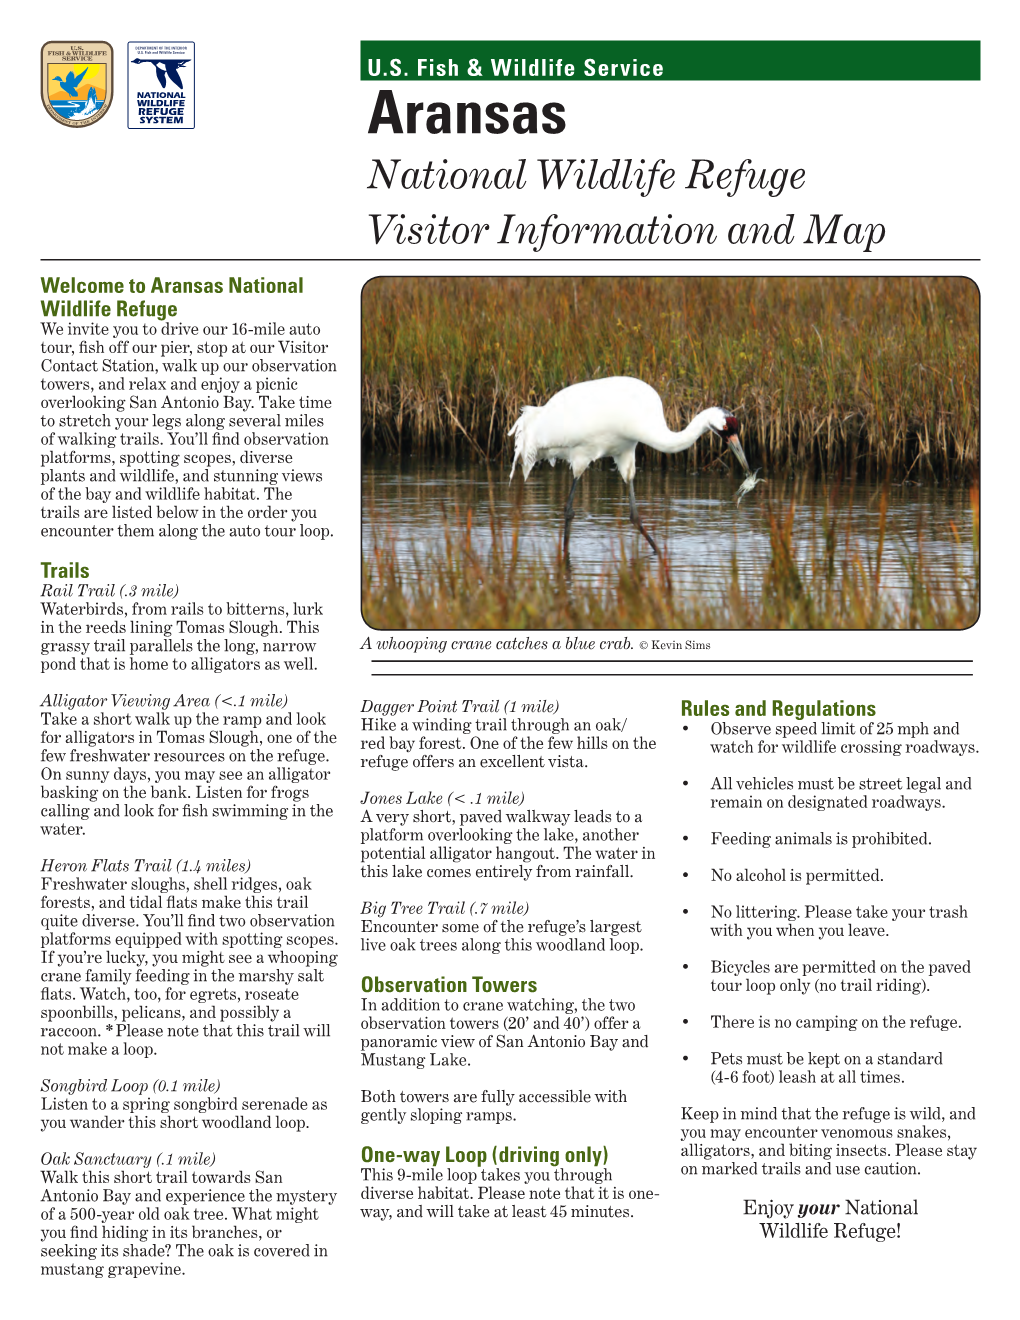 Aransas National Wildlife Refuge Visitor Information and Map